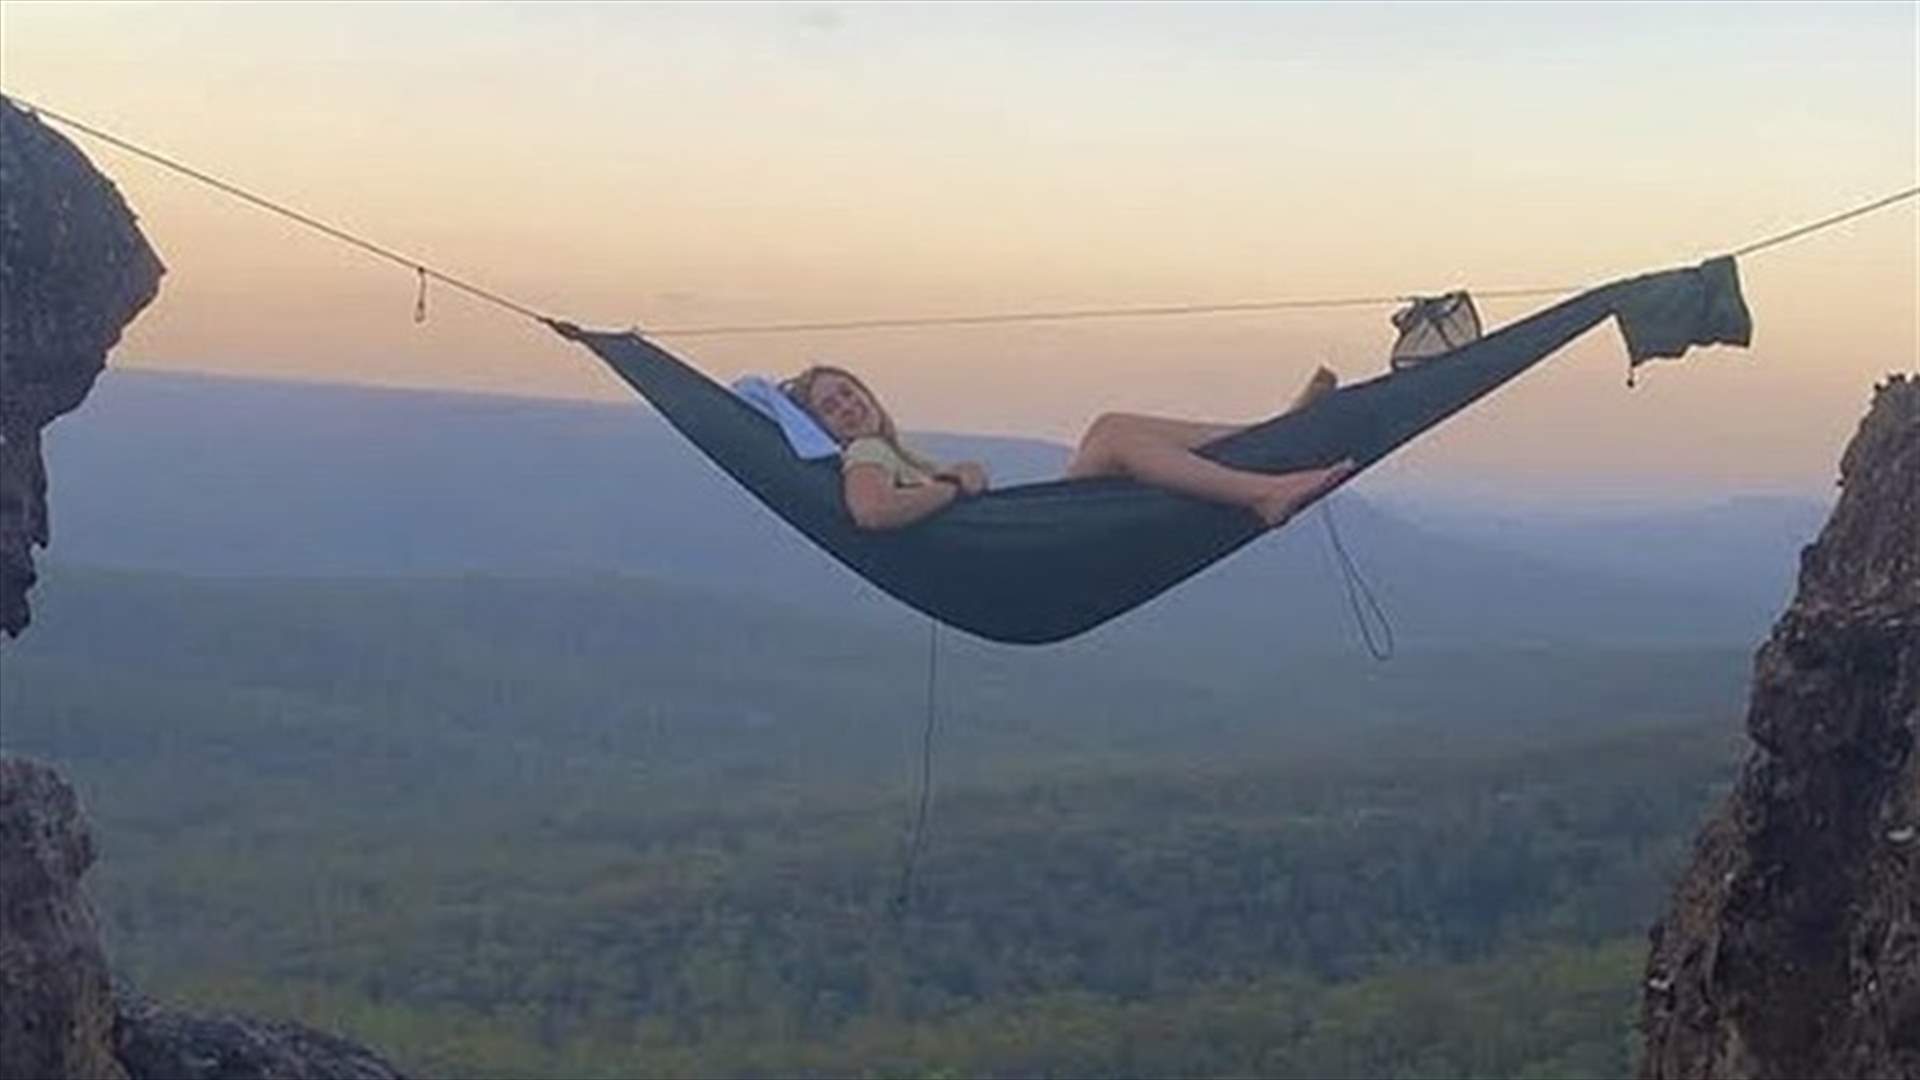 مغامرة تخطف الأنفاس... شاب وشقيقته ينامان على أرجوحة شبكية بين الجبال على ارتفاع 21 متراً (صور)